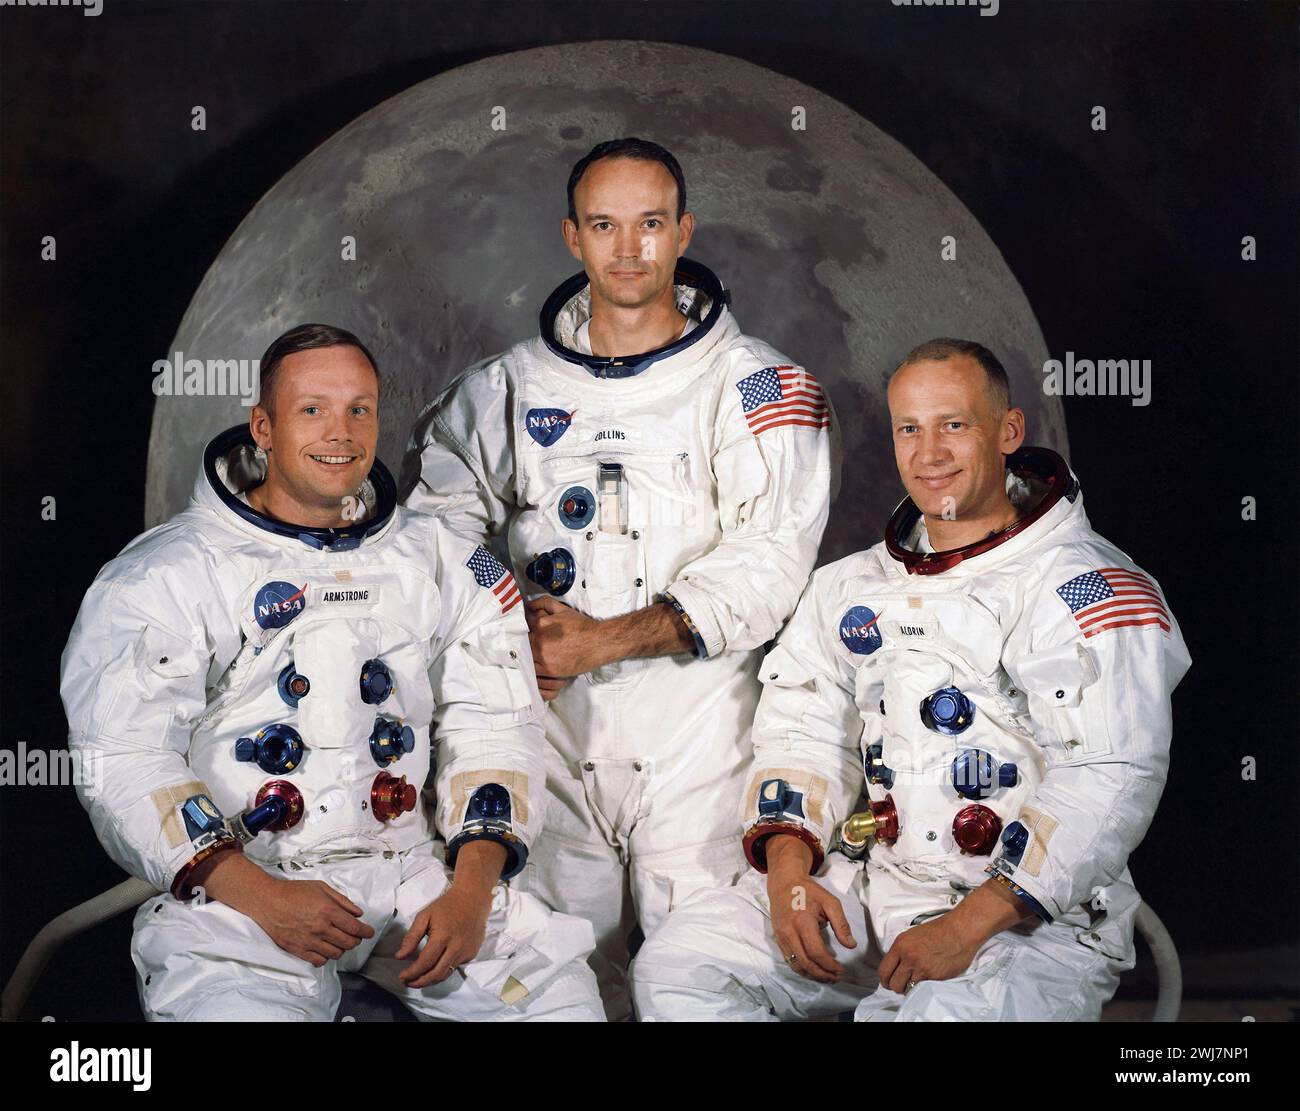 Apolo 11 astronautas. La tripulación del Apolo 11, el primer vuelo espacial en aterrizar hombres en la luna el 20 de julio de 1969. De izquierda a derecha, Neil Armstrong, Michael Collins y Buzz Aldrin. Foto cortesía de la NASA, mayo de 1969. Foto de stock